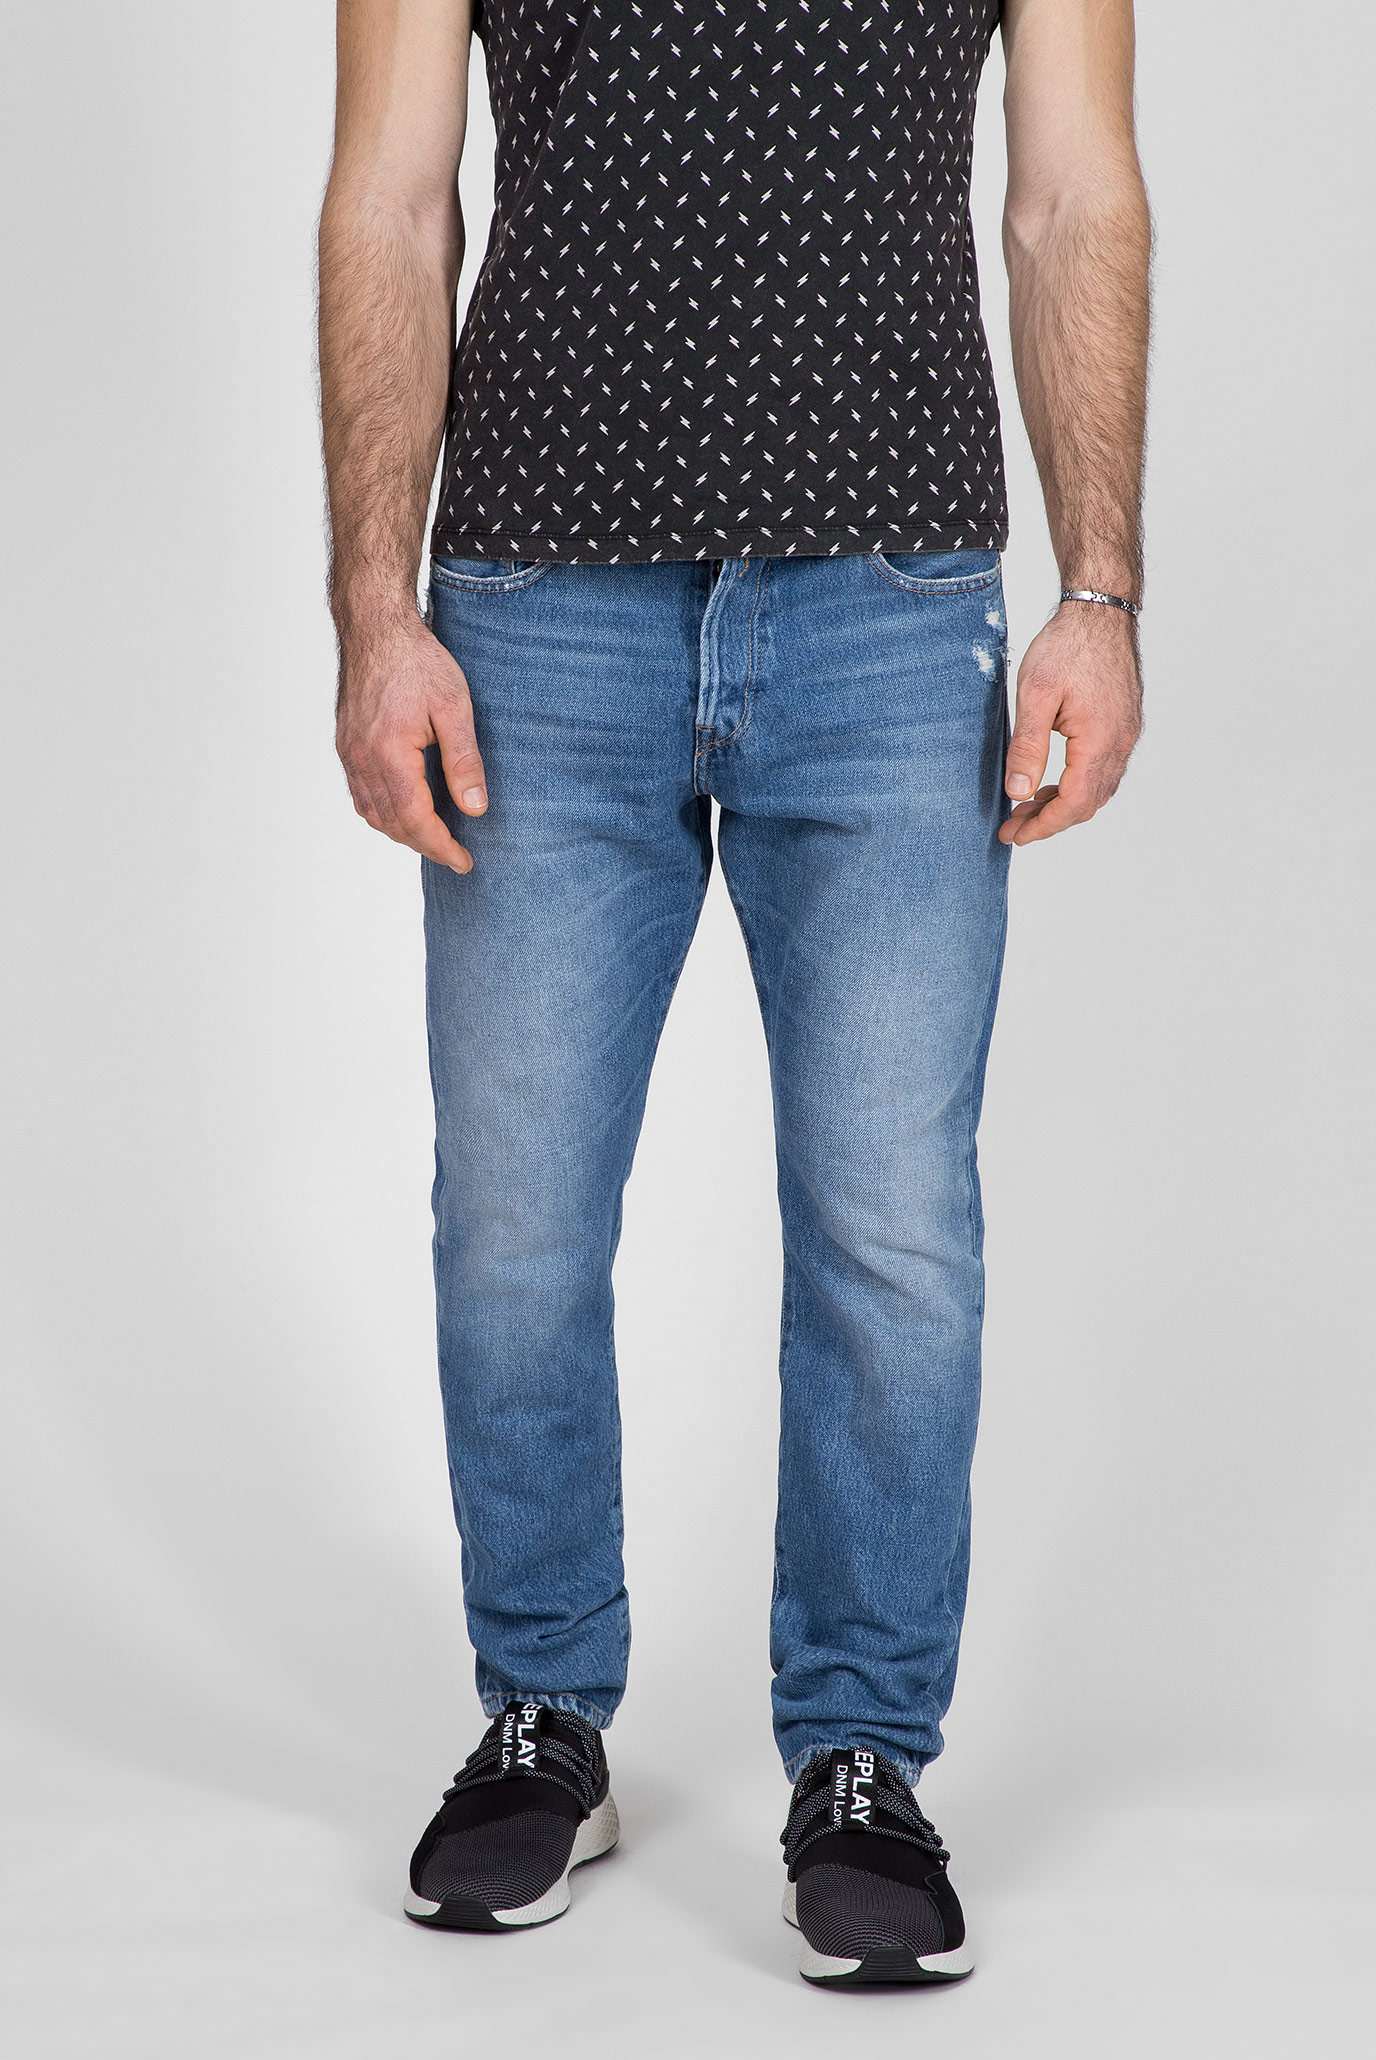 Мужские синие джинсы TINMAR 1